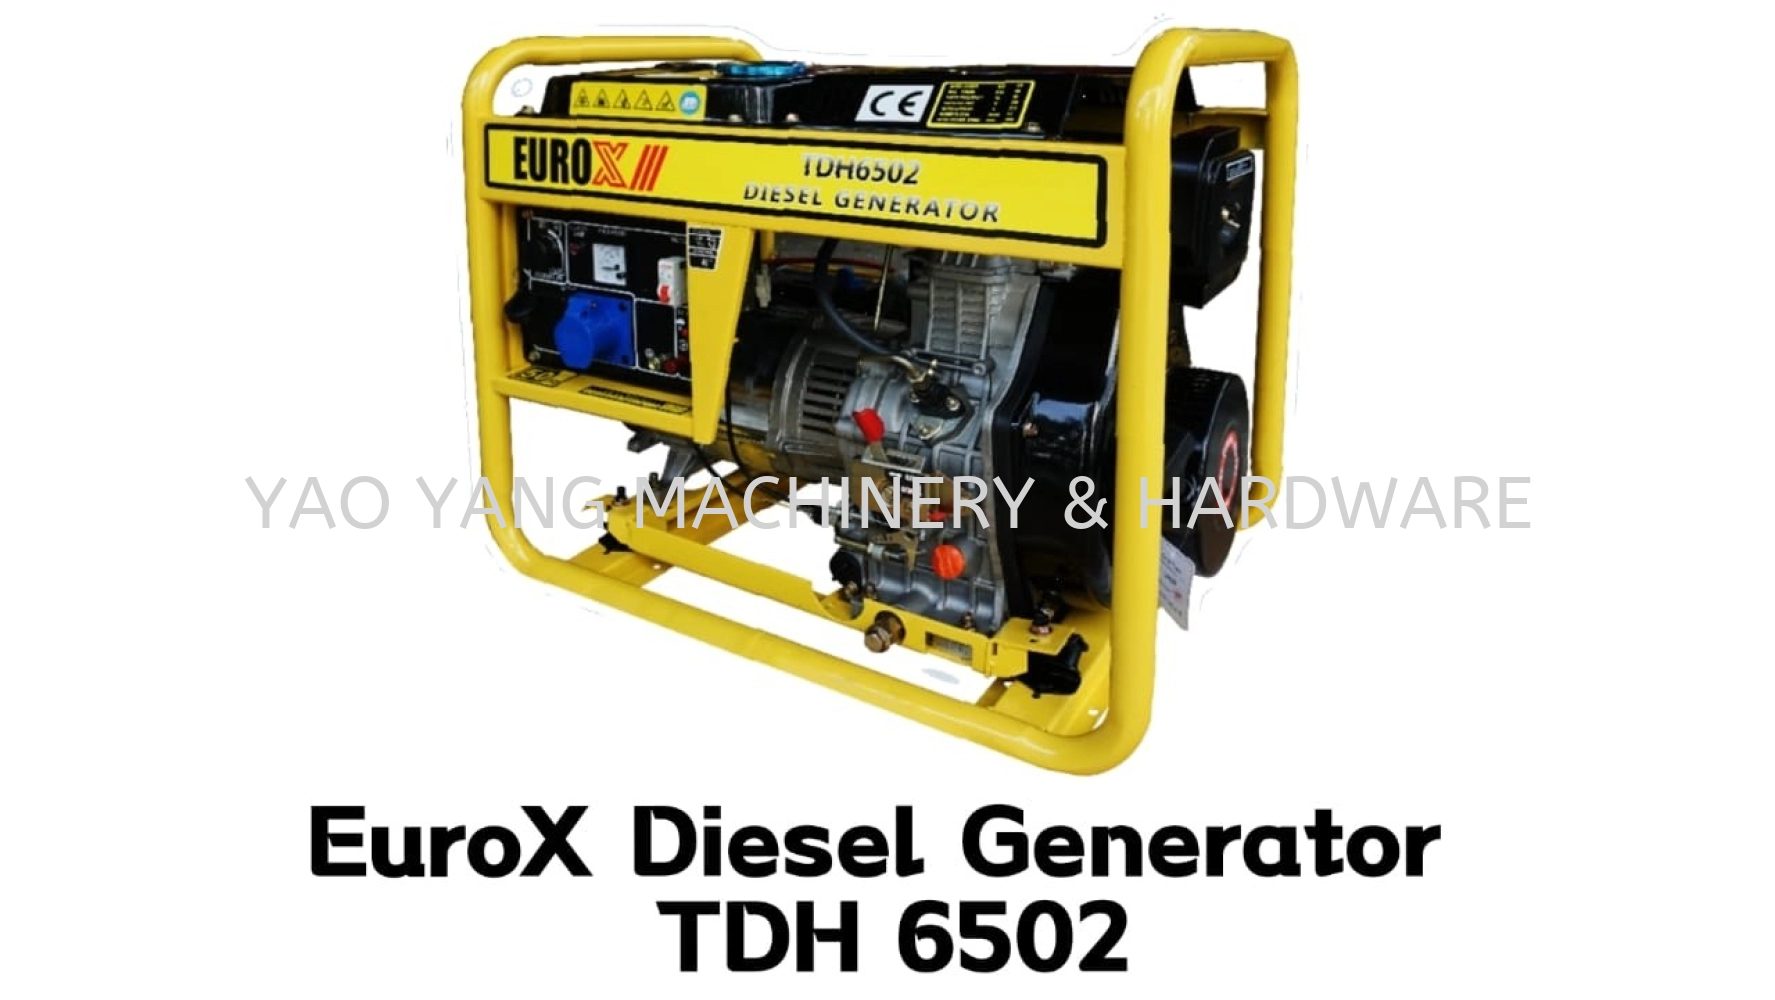 EuroX-III Diesel Generator TDH 6502